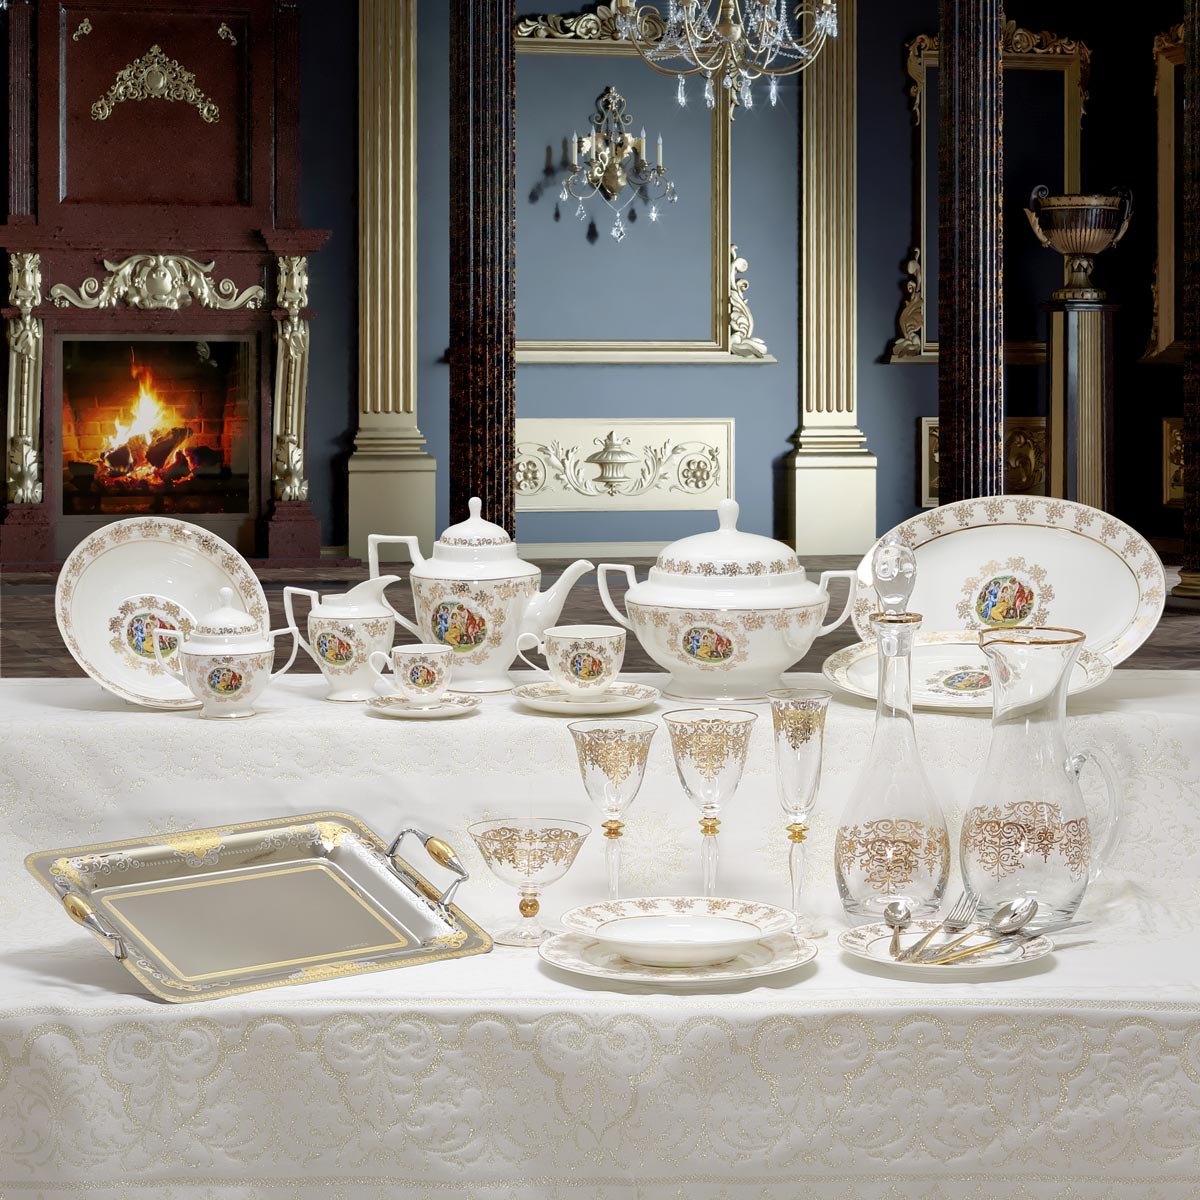 Servizio piatti bicchieri e vassoi per la sala da pranzo con decoro classico in oro - Armonia